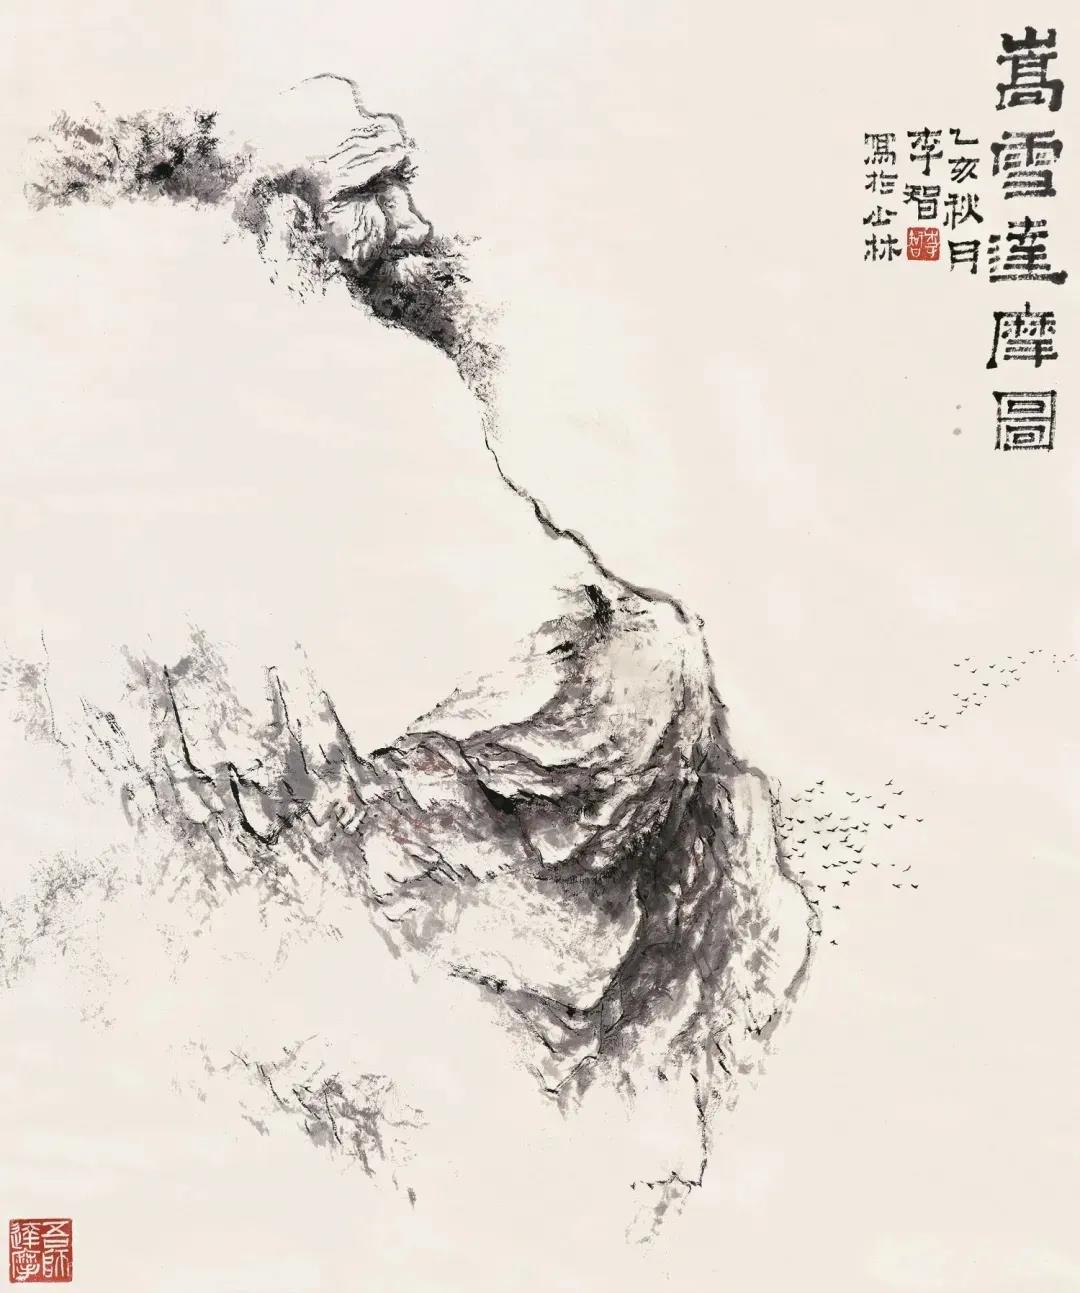 中国少林禅画第一人 · 新郑八旬艺术家向郑州美术馆捐赠作品